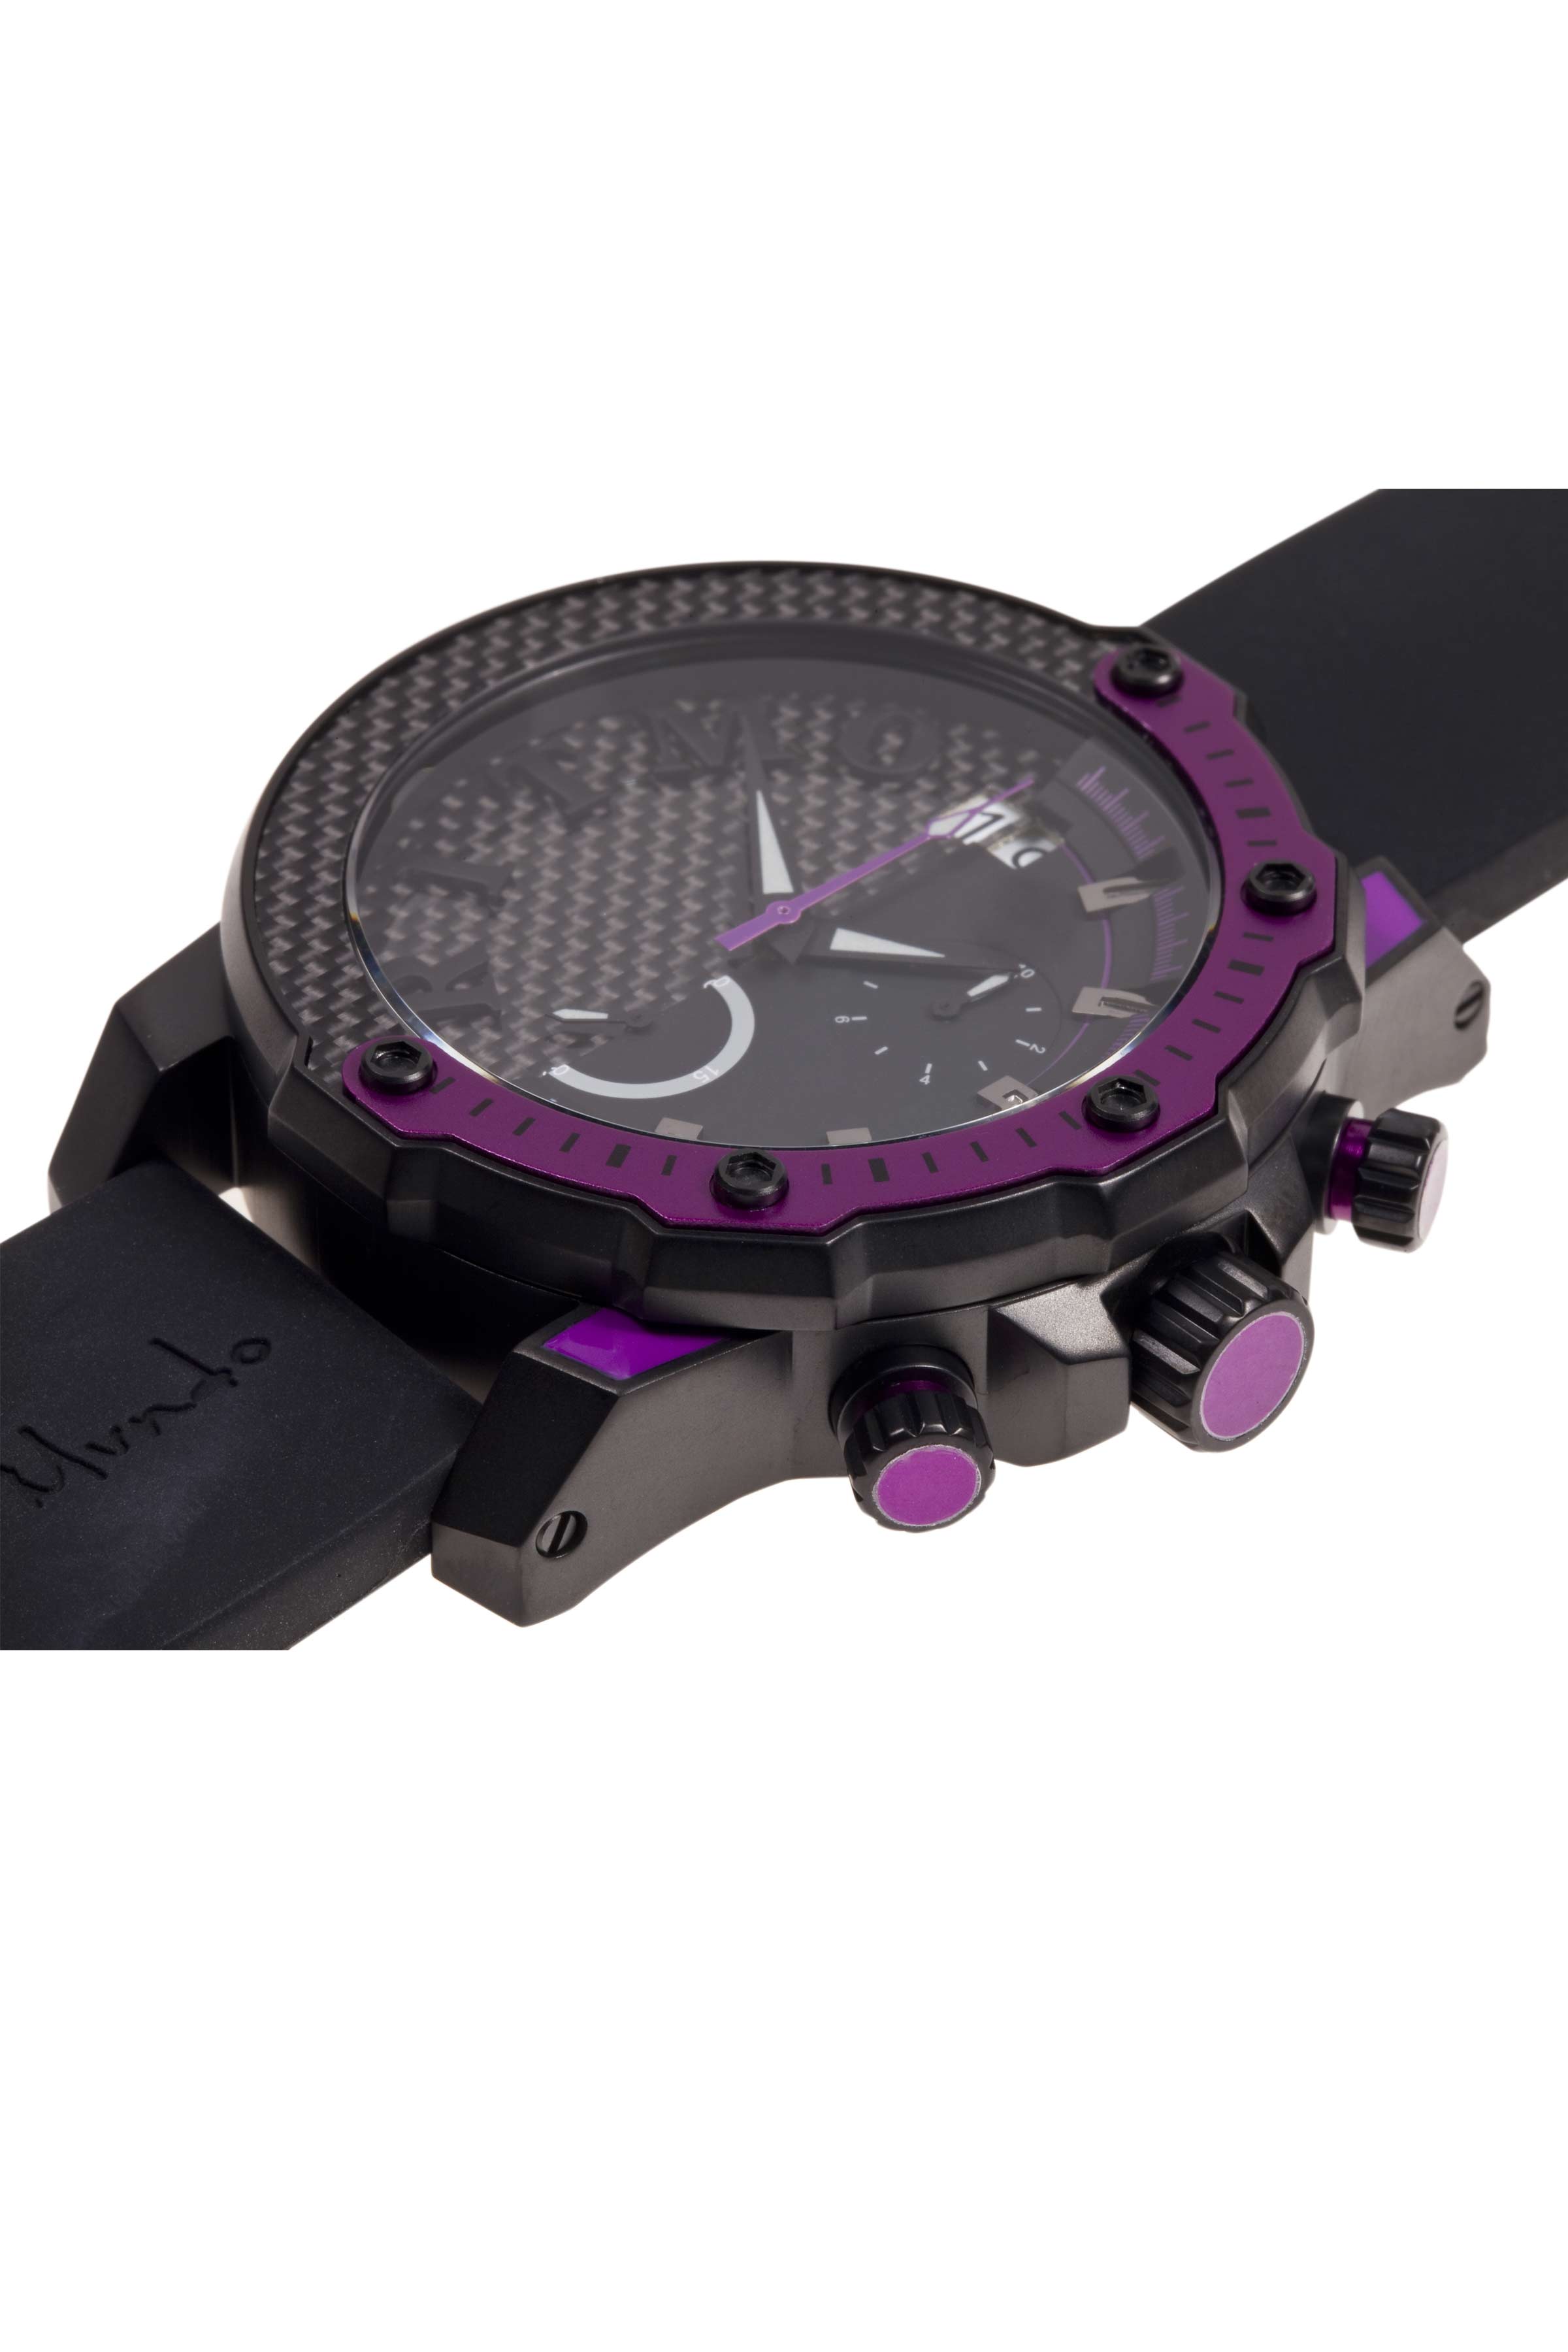 Ritmo Mundo's Quantum III watch offers dual personalities. 